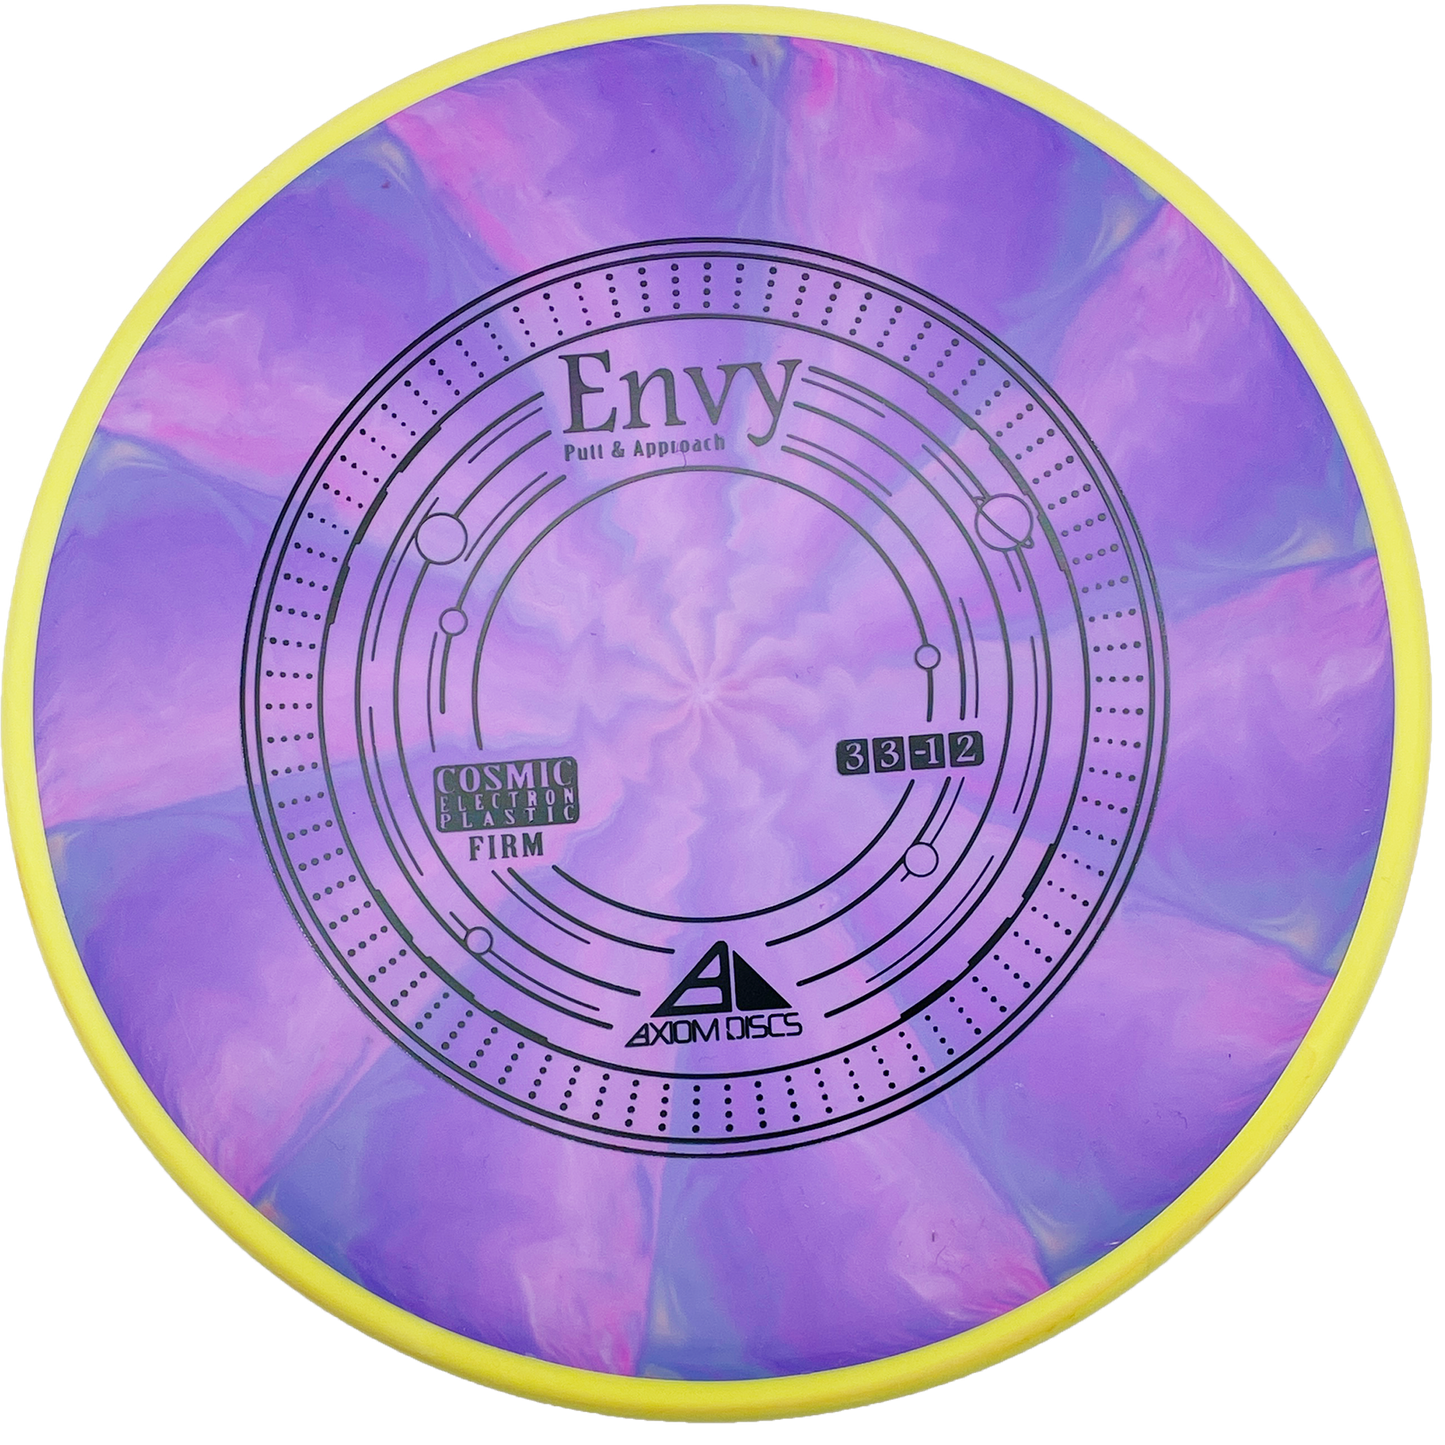 Axiom Envy - Cosmic Electron (Firm) - Purple Siwrl